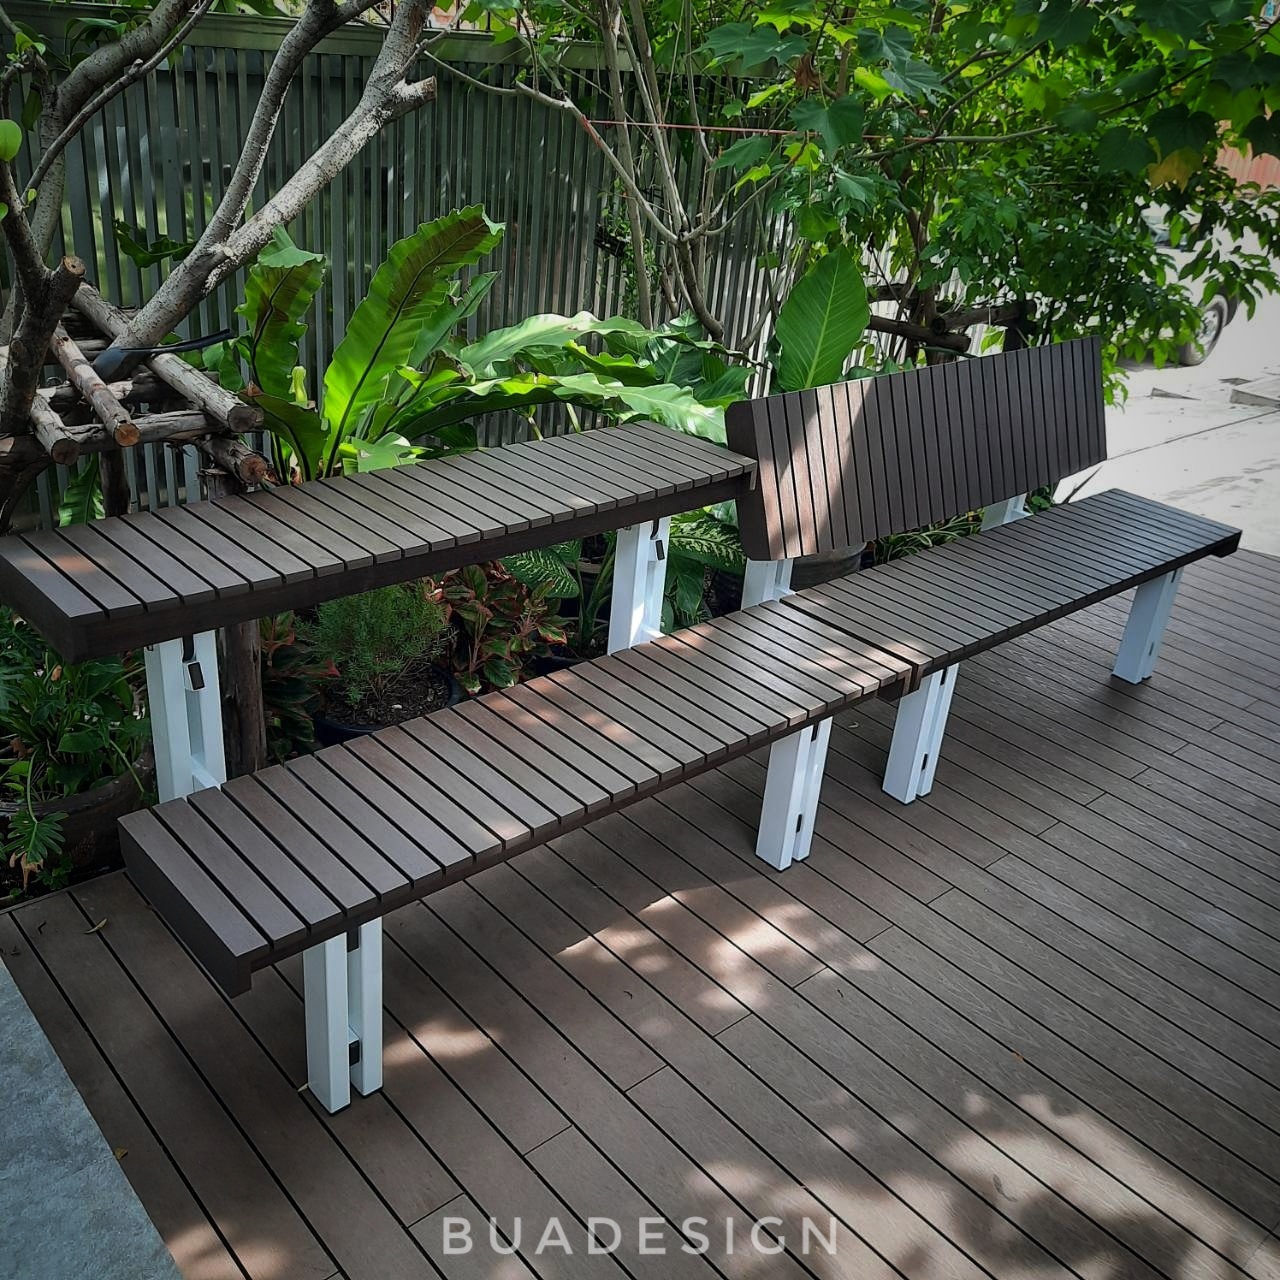 #เก้าอี้ไฟเบอร์กลาส #buadesignstudio#outdoorfurniture#outdoorbench#bench#เก้าอี้สนาม#ม้านั่งสนาม#เฟอร์นิเจอร์สนาม#โต๊ะสนาม#เฟอร์นิเจอร์กลางแจ้ง